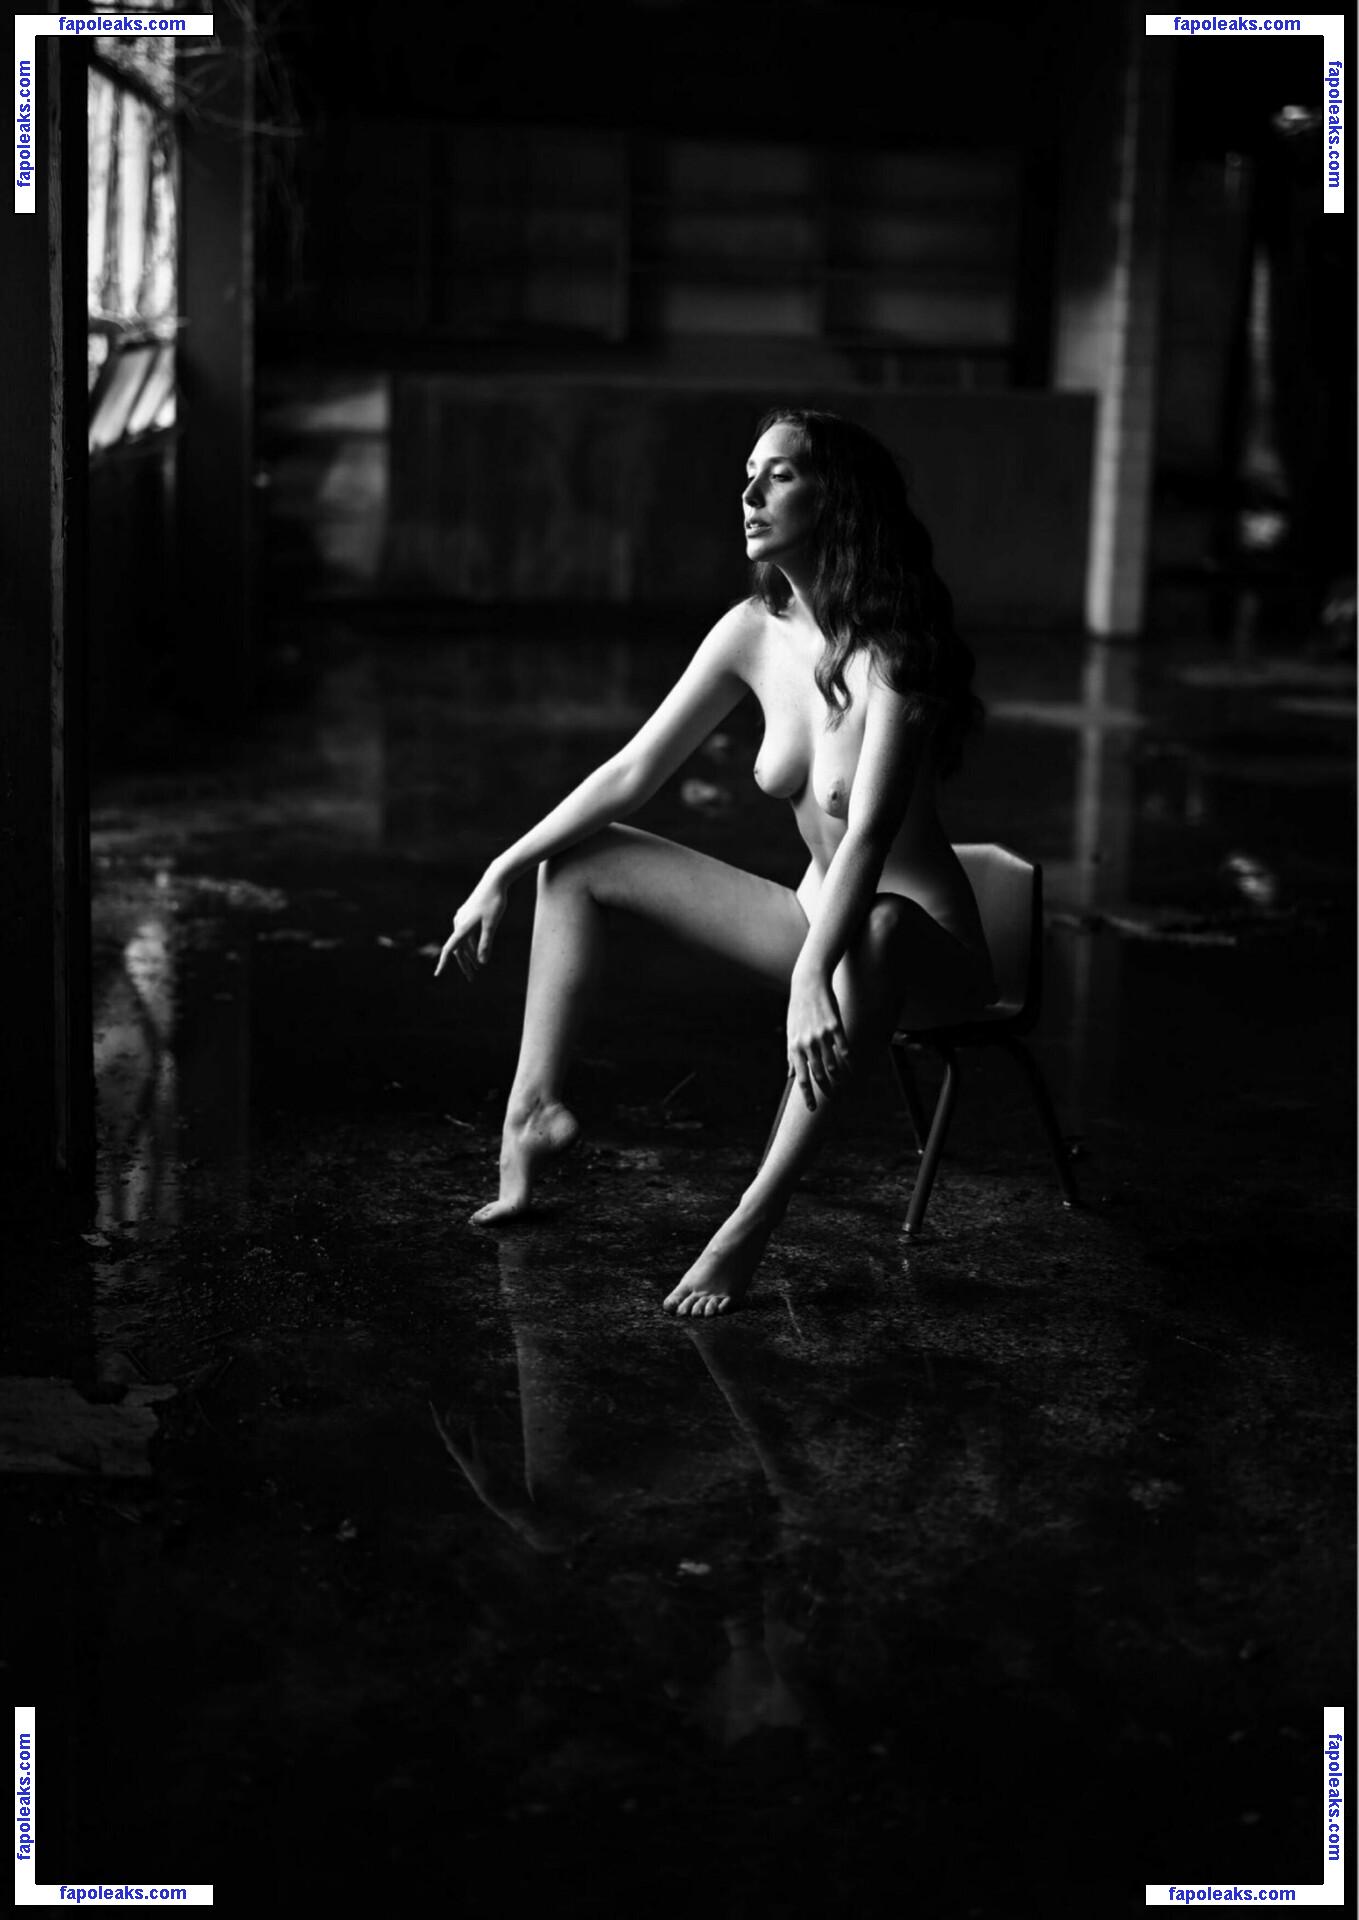 Willa Prescott / willavanillaaa2 nude photo #0129 from OnlyFans